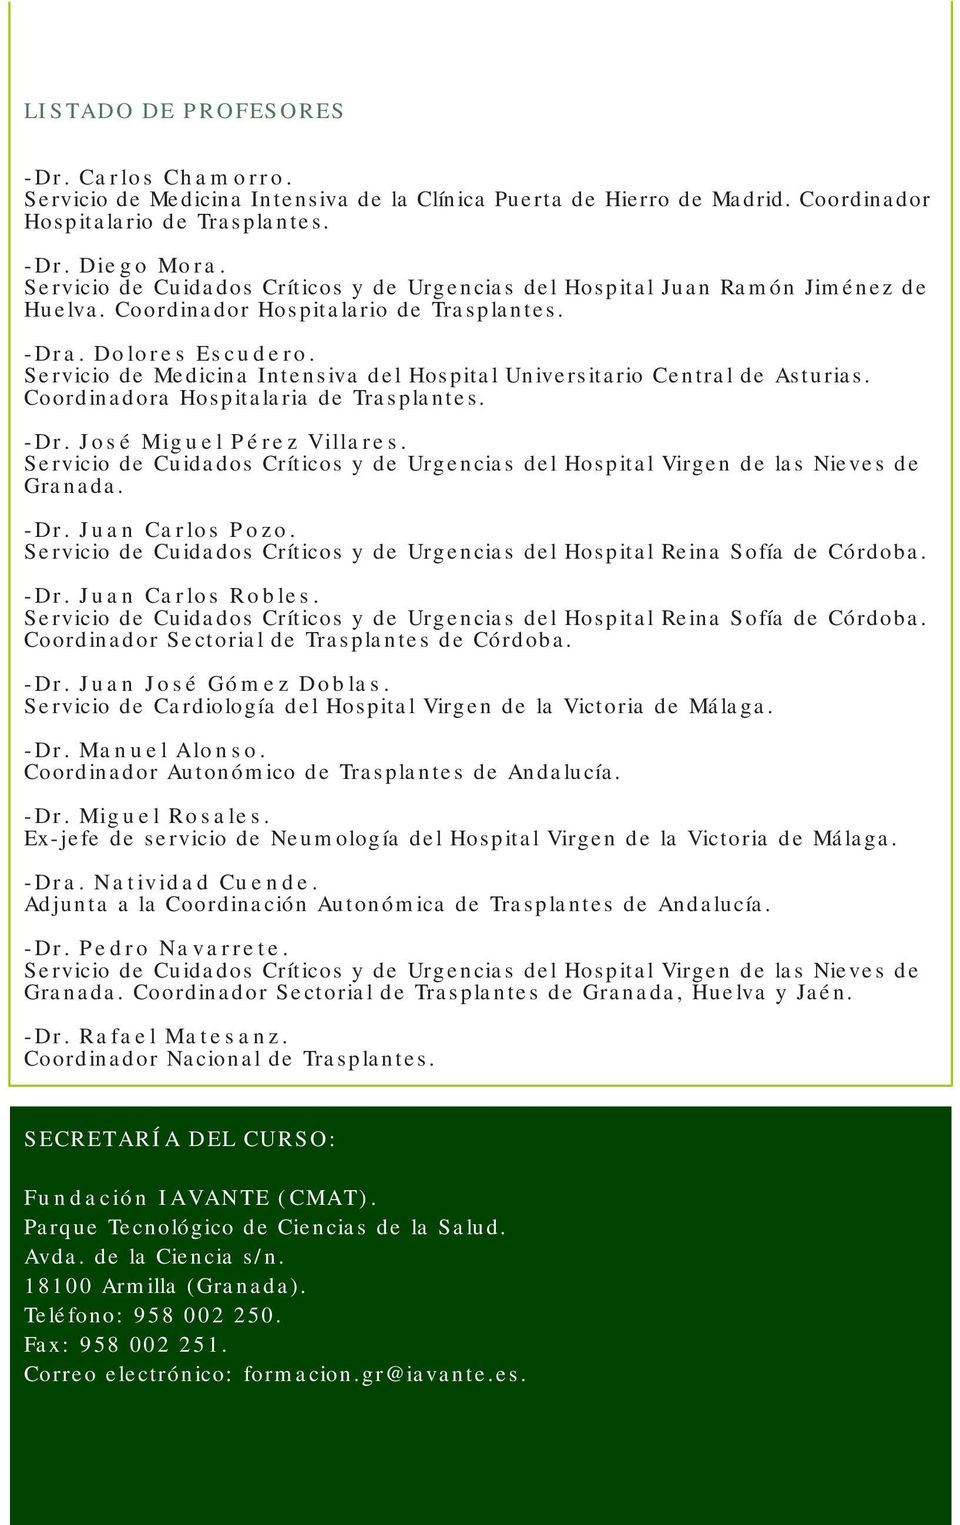 - Servicio de Medicina Intensiva del Hospital Universitario Central de Asturias. Coordinadora Hospitalaria de Trasplantes. -Dr. José Miguel Pérez Villares.